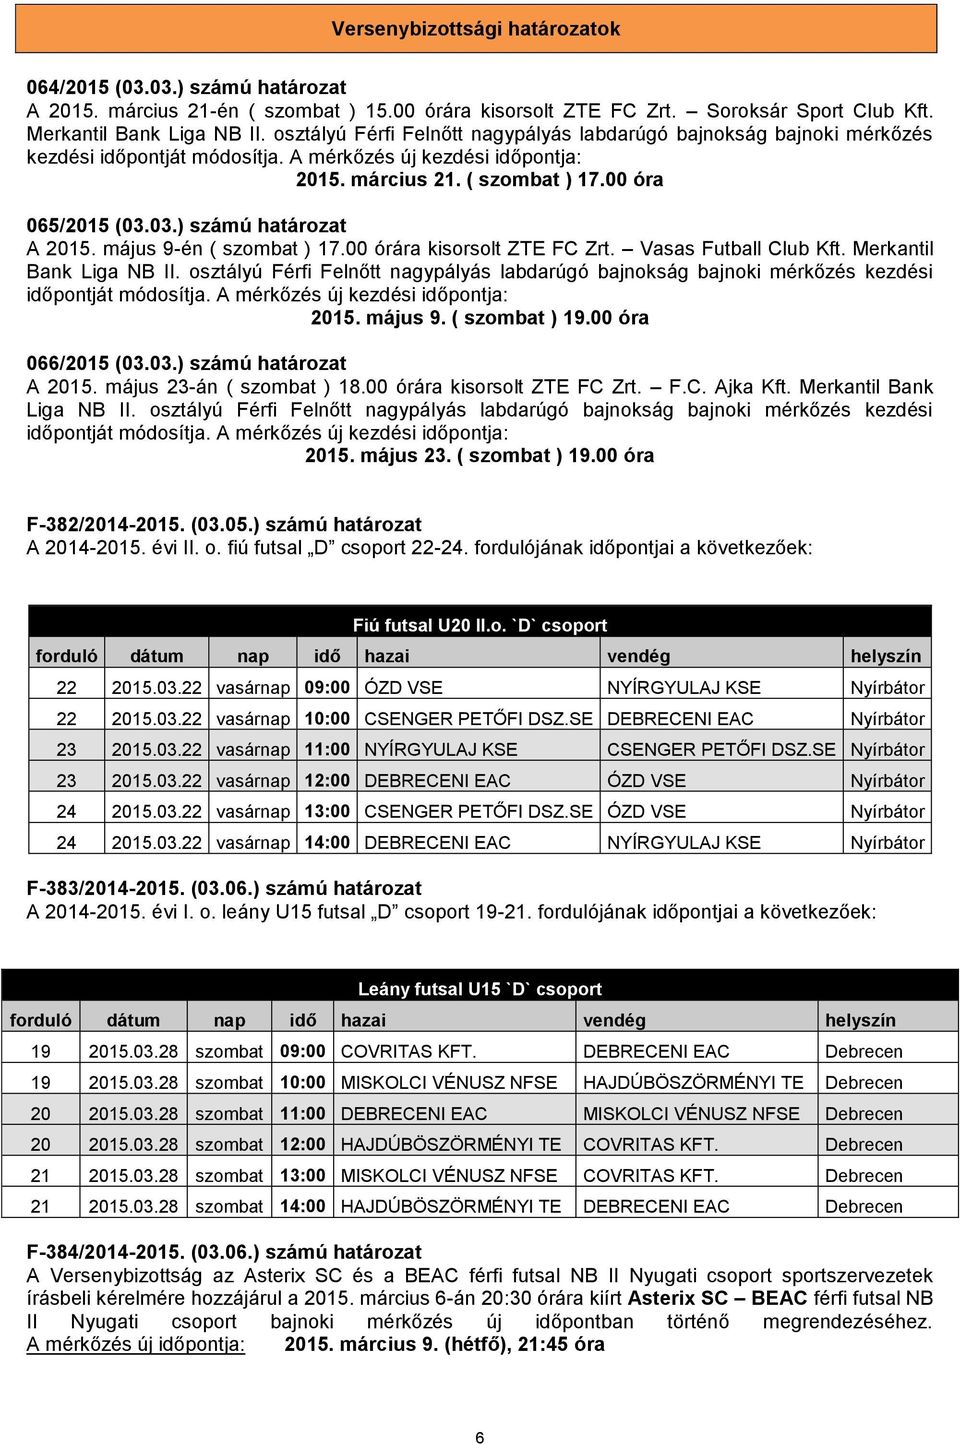 03.) számú határozat A 2015. május 9-én ( szombat ) 17.00 órára kisorsolt ZTE FC Zrt. Vasas Futball Club Kft. Merkantil Bank Liga NB II.